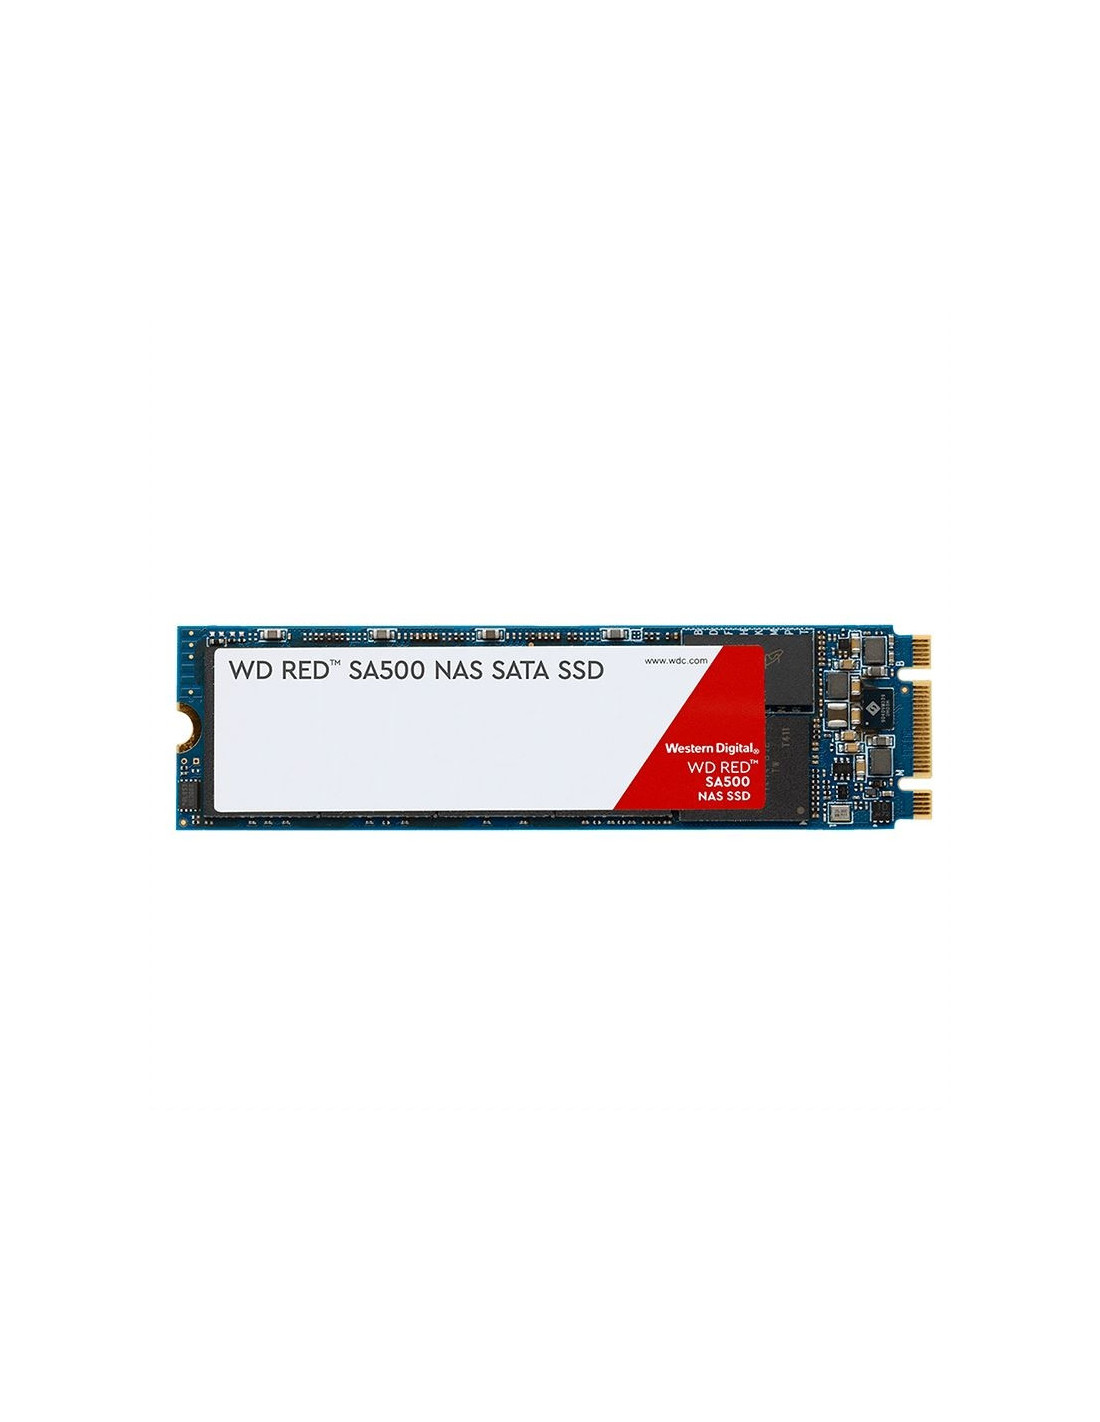 Disco duro  WDS500G1R0B 500GB Disco M.2 SATA WD RED SA500 560MB/s